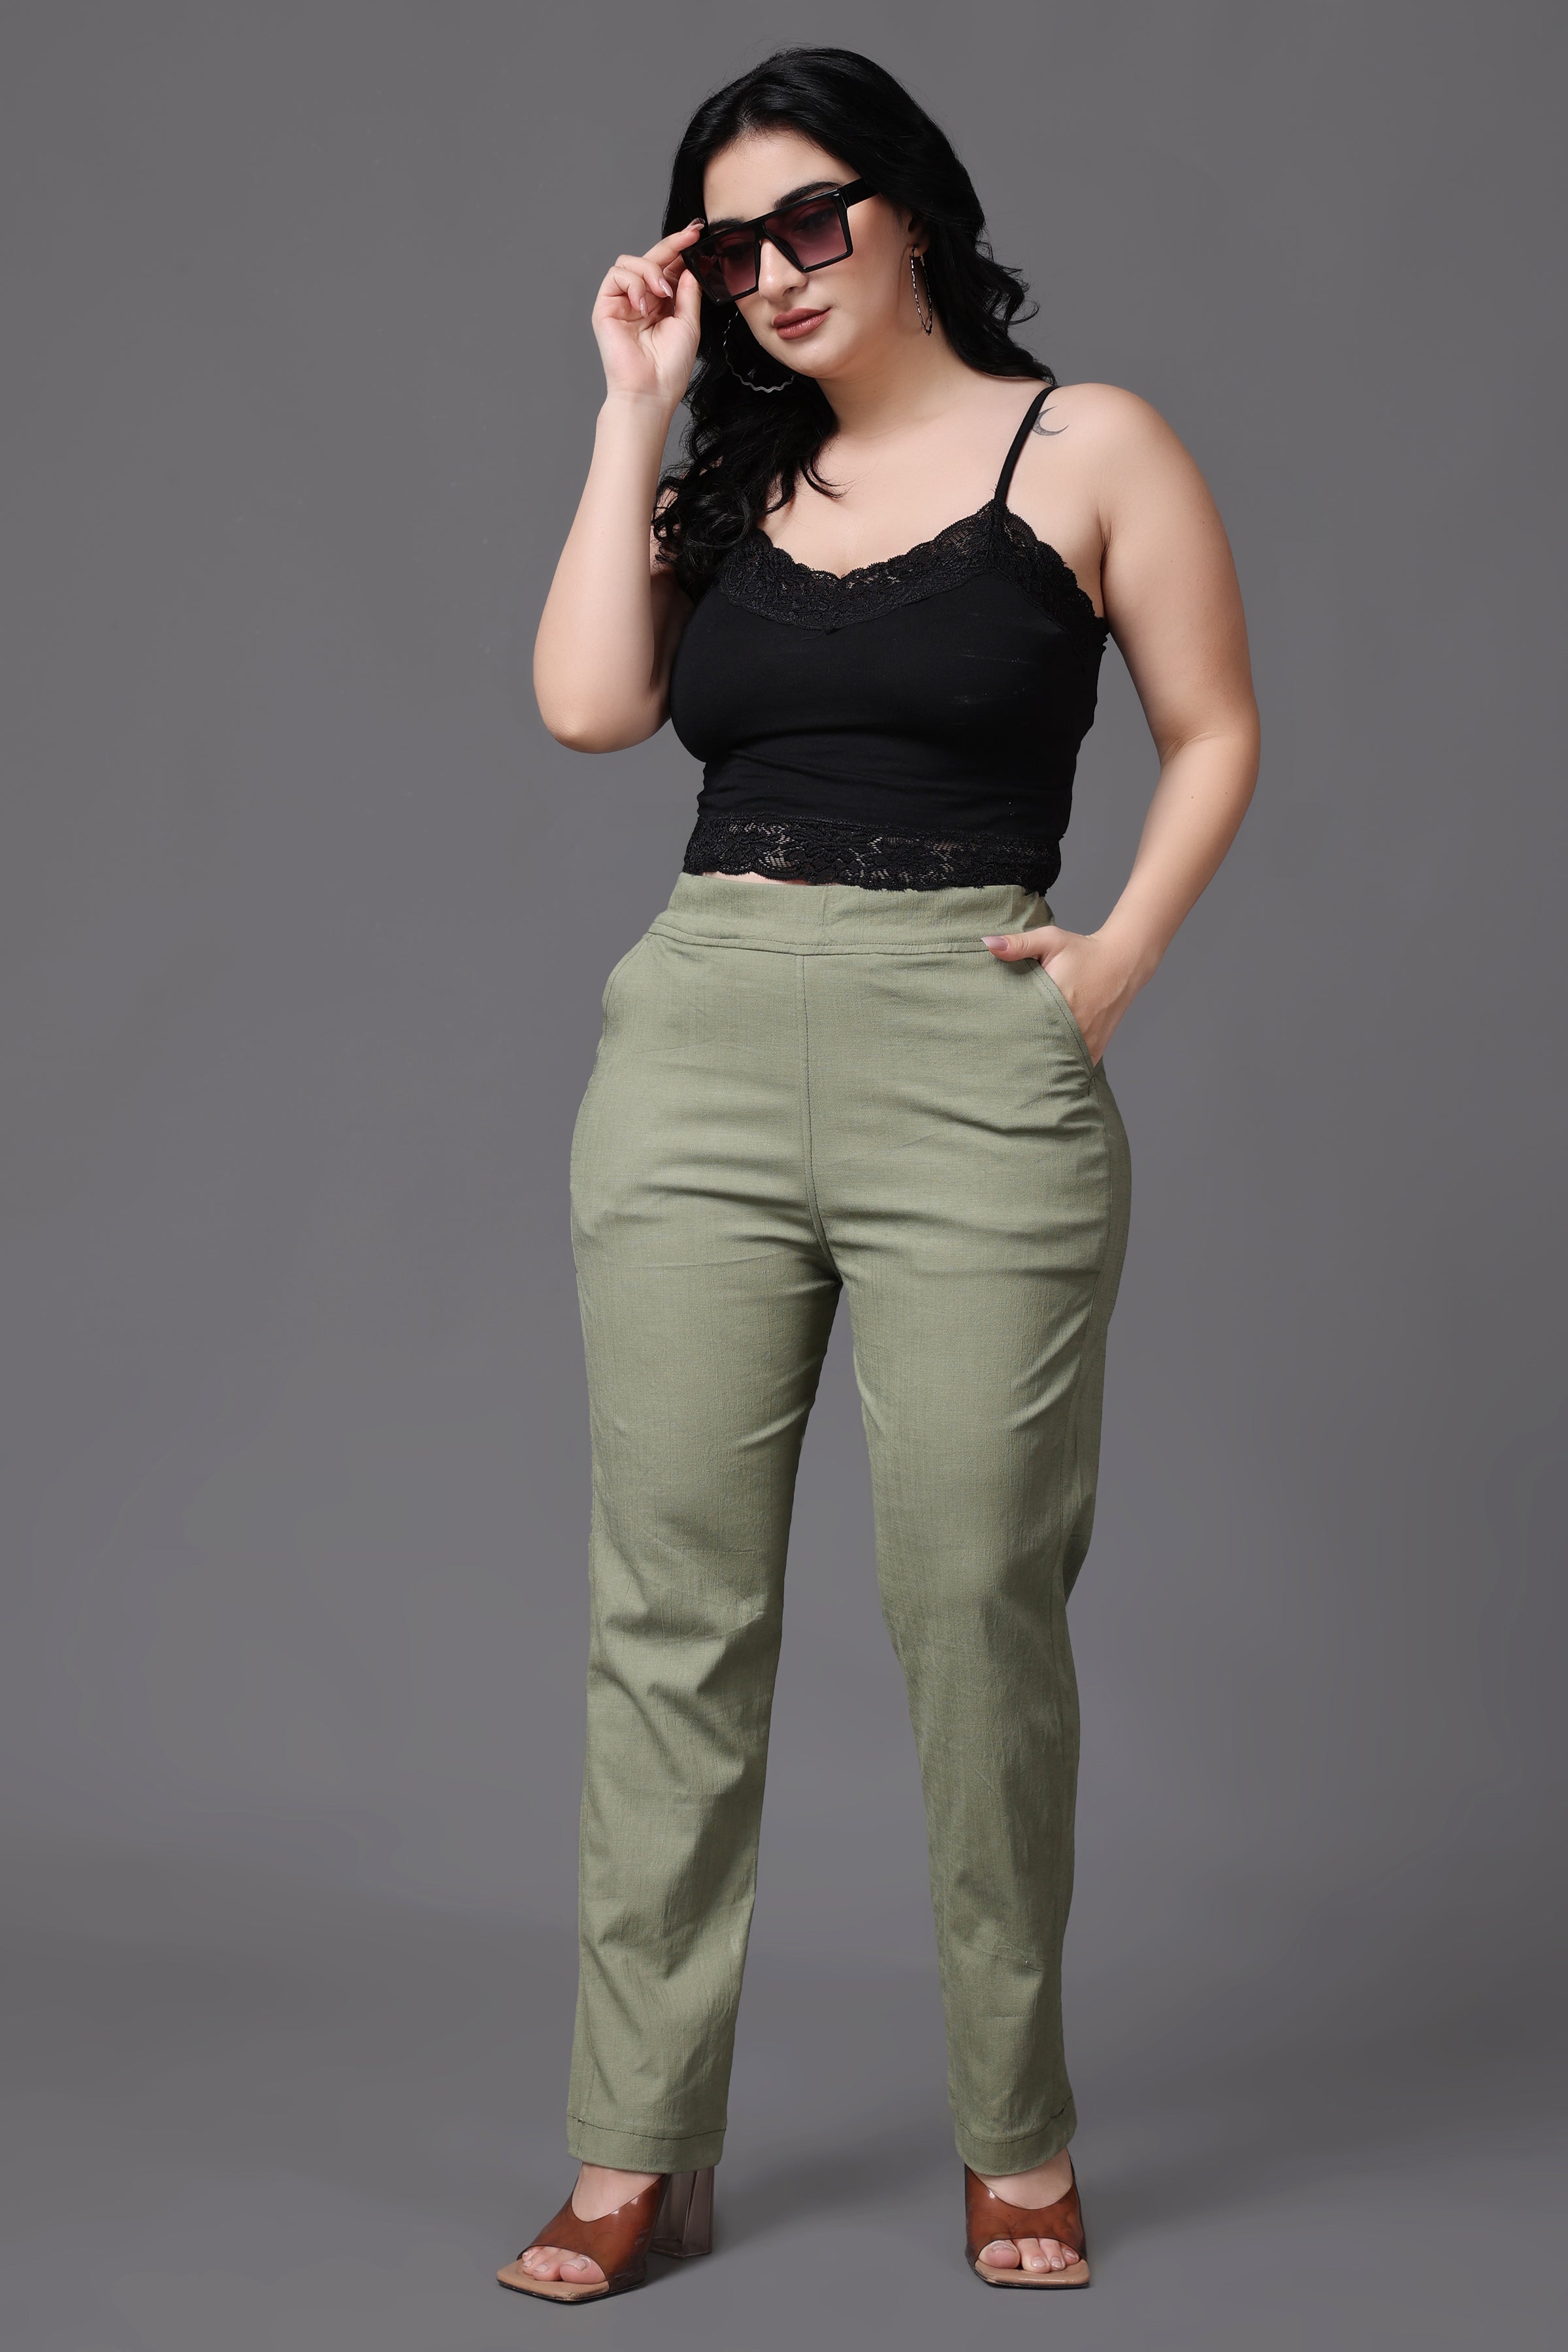 Plus Size Women's Pants | Plus Pants | JCPenney